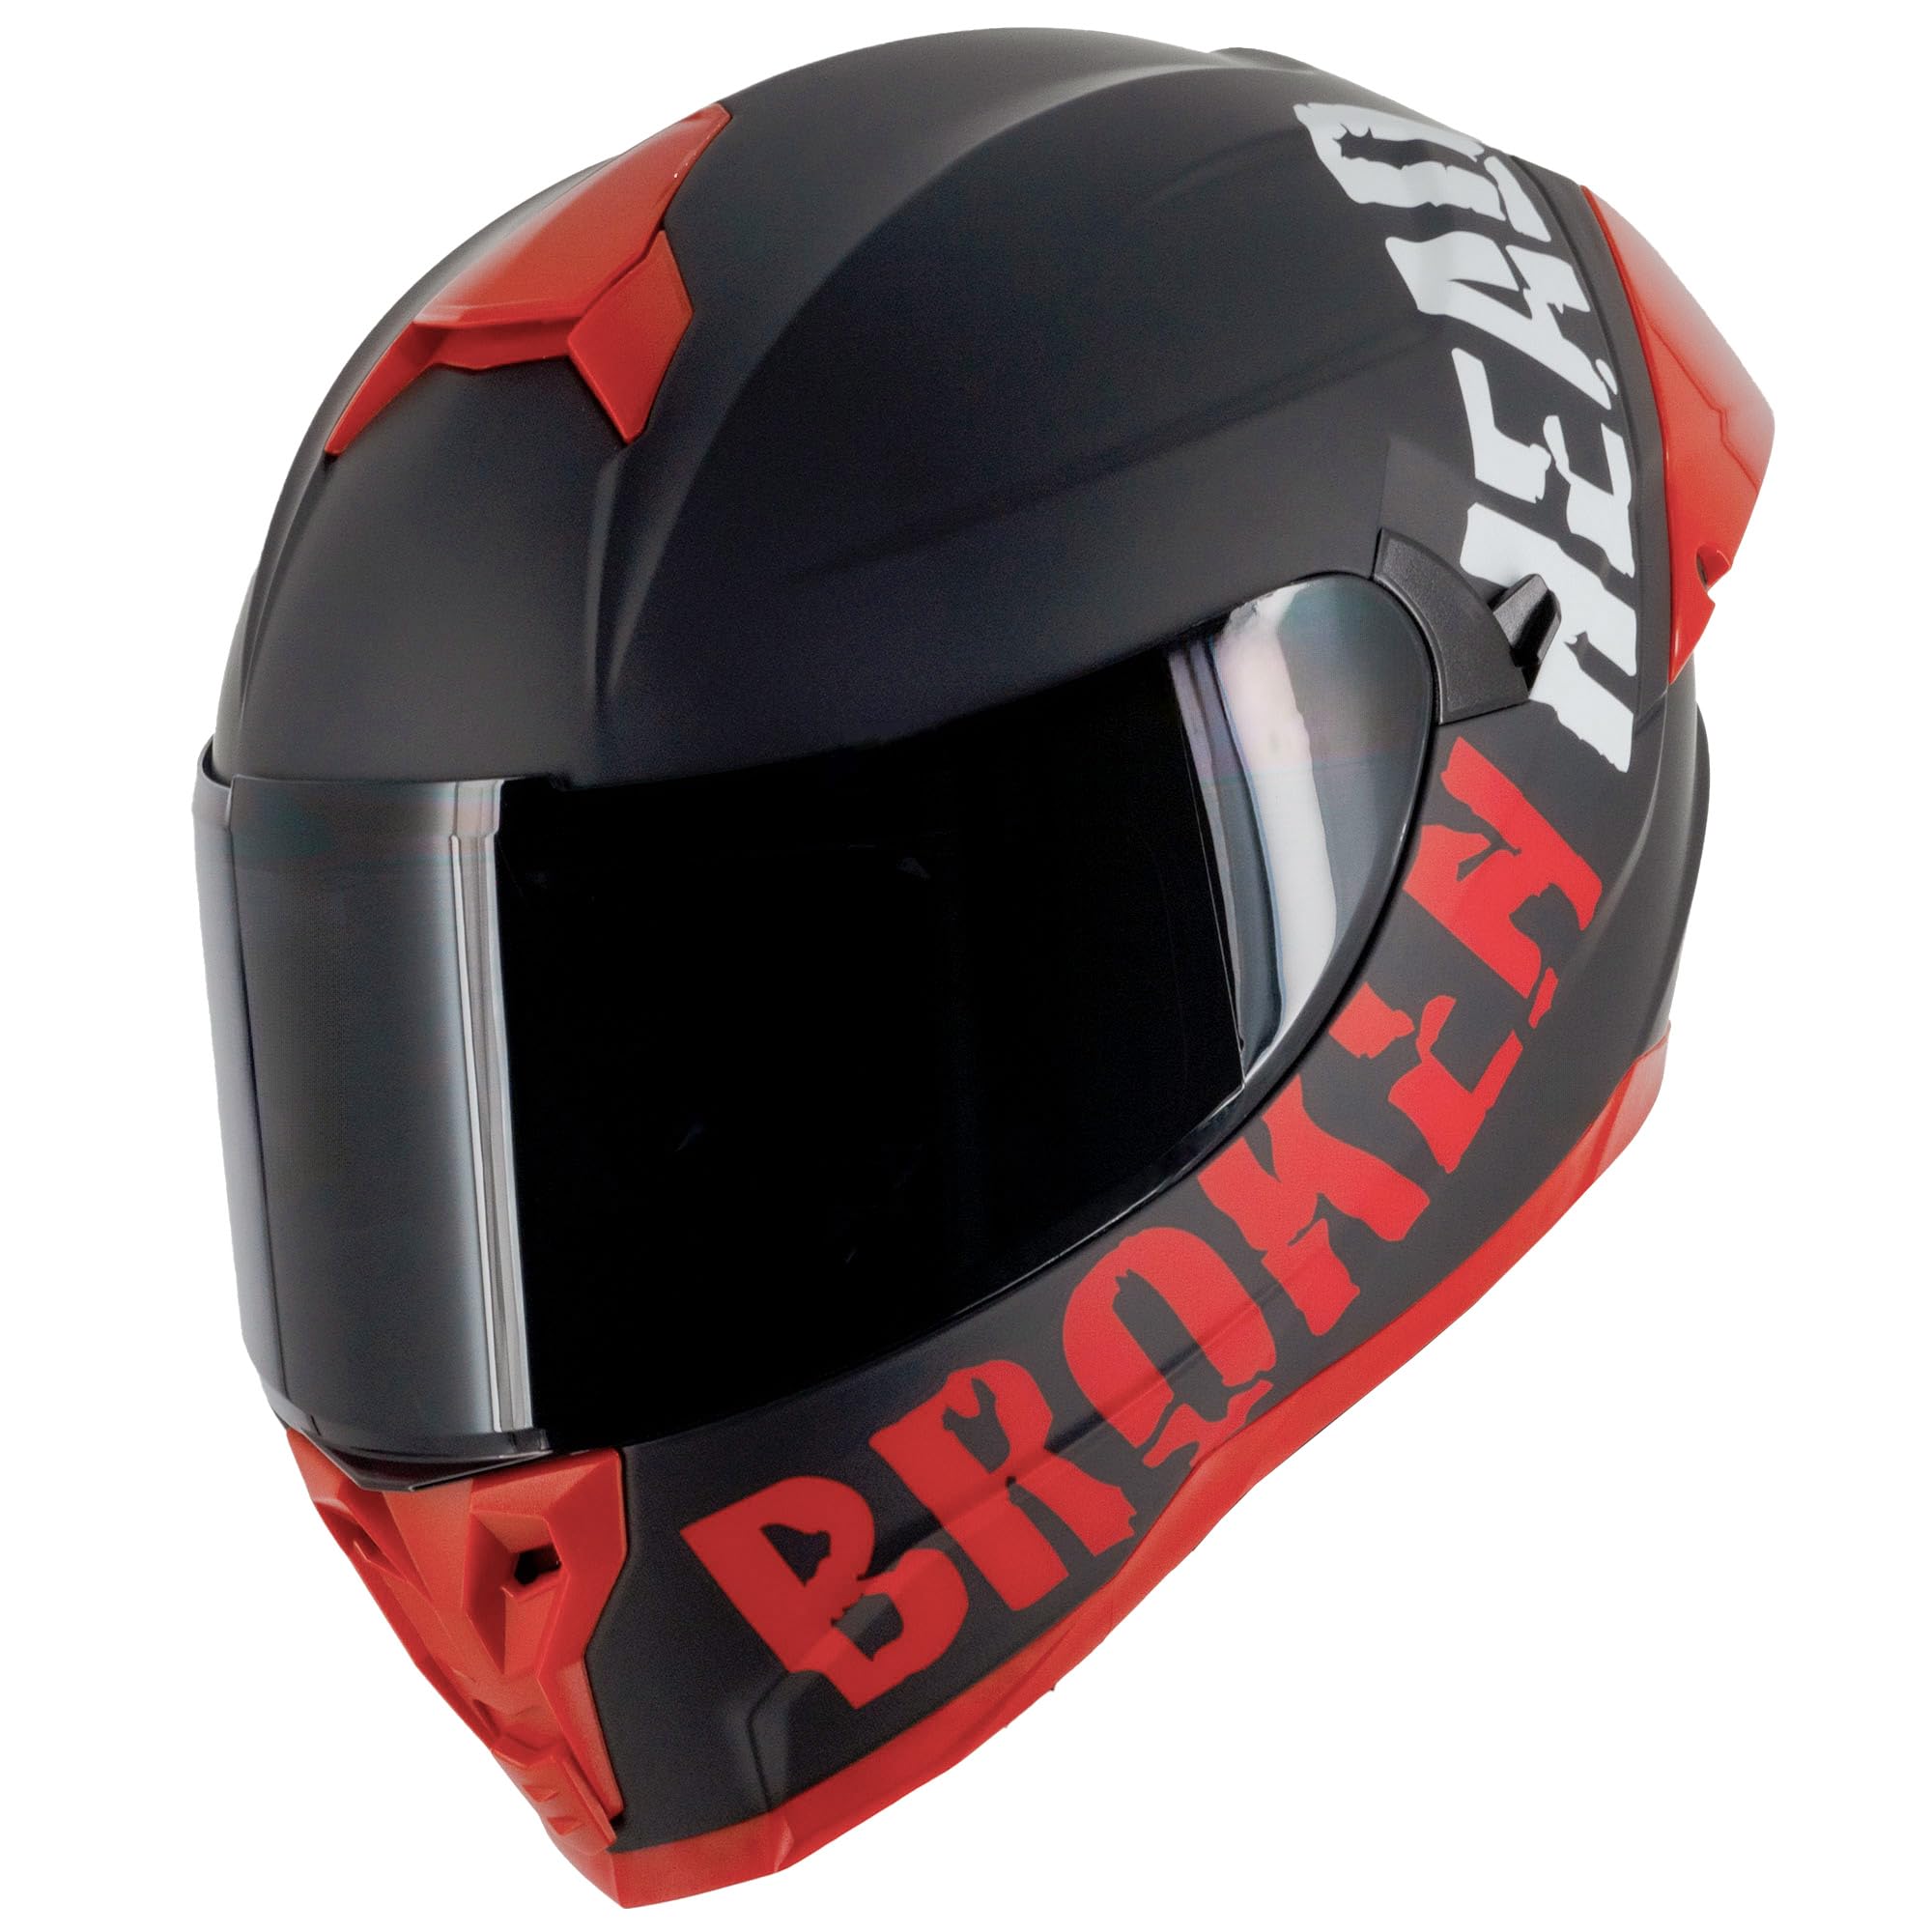 Broken Head BeProud Pro Sport Rot - Motorradhelm Mit Sonnenblende und Spoiler – Inkl. 2 Visiere (Schwarz + Klar) Sportlicher Integralhelm Größe L (59-60 cm)